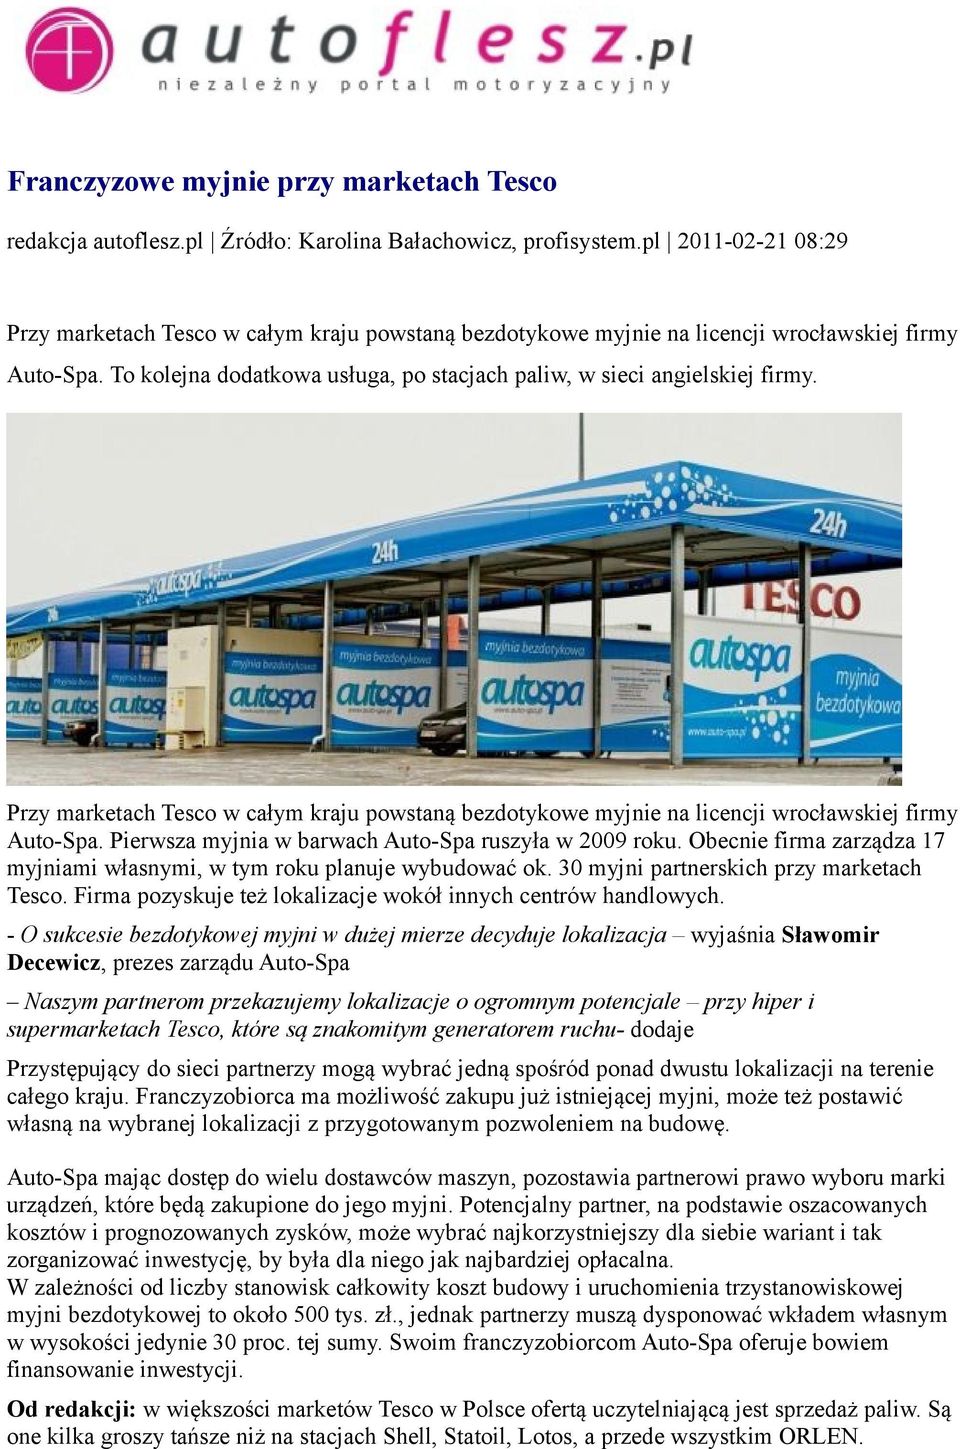 Obecnie firma zarządza 17 myjniami własnymi, w tym roku planuje wybudować ok. 30 myjni partnerskich przy marketach Tesco. Firma pozyskuje też lokalizacje wokół innych centrów handlowych.